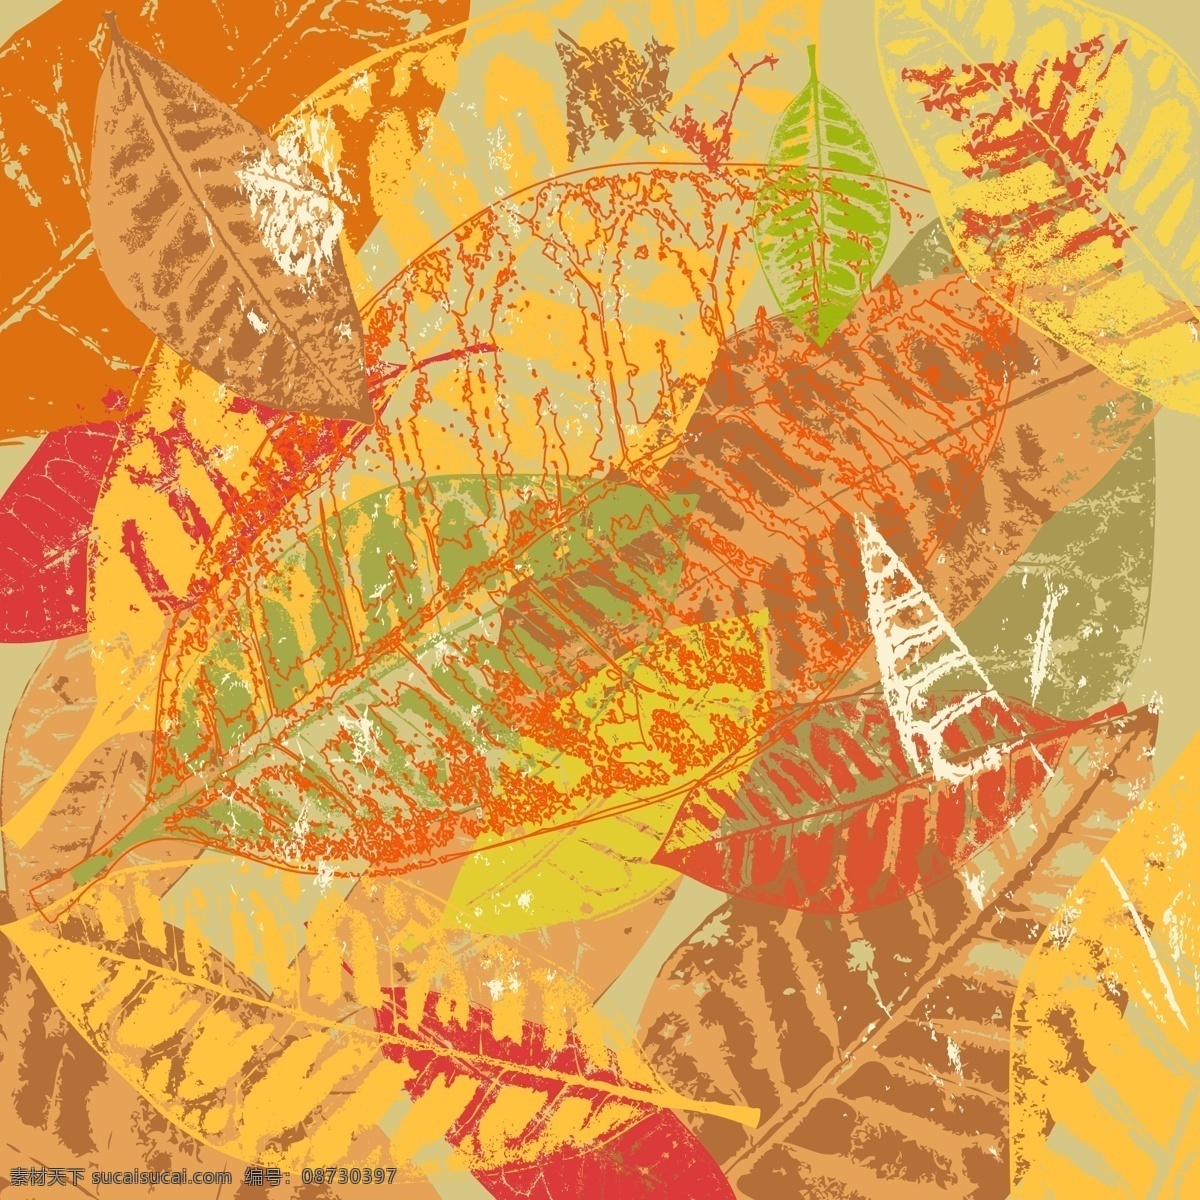 矢量 秋天 树叶 背景图 秋叶 矢量素材 纹理